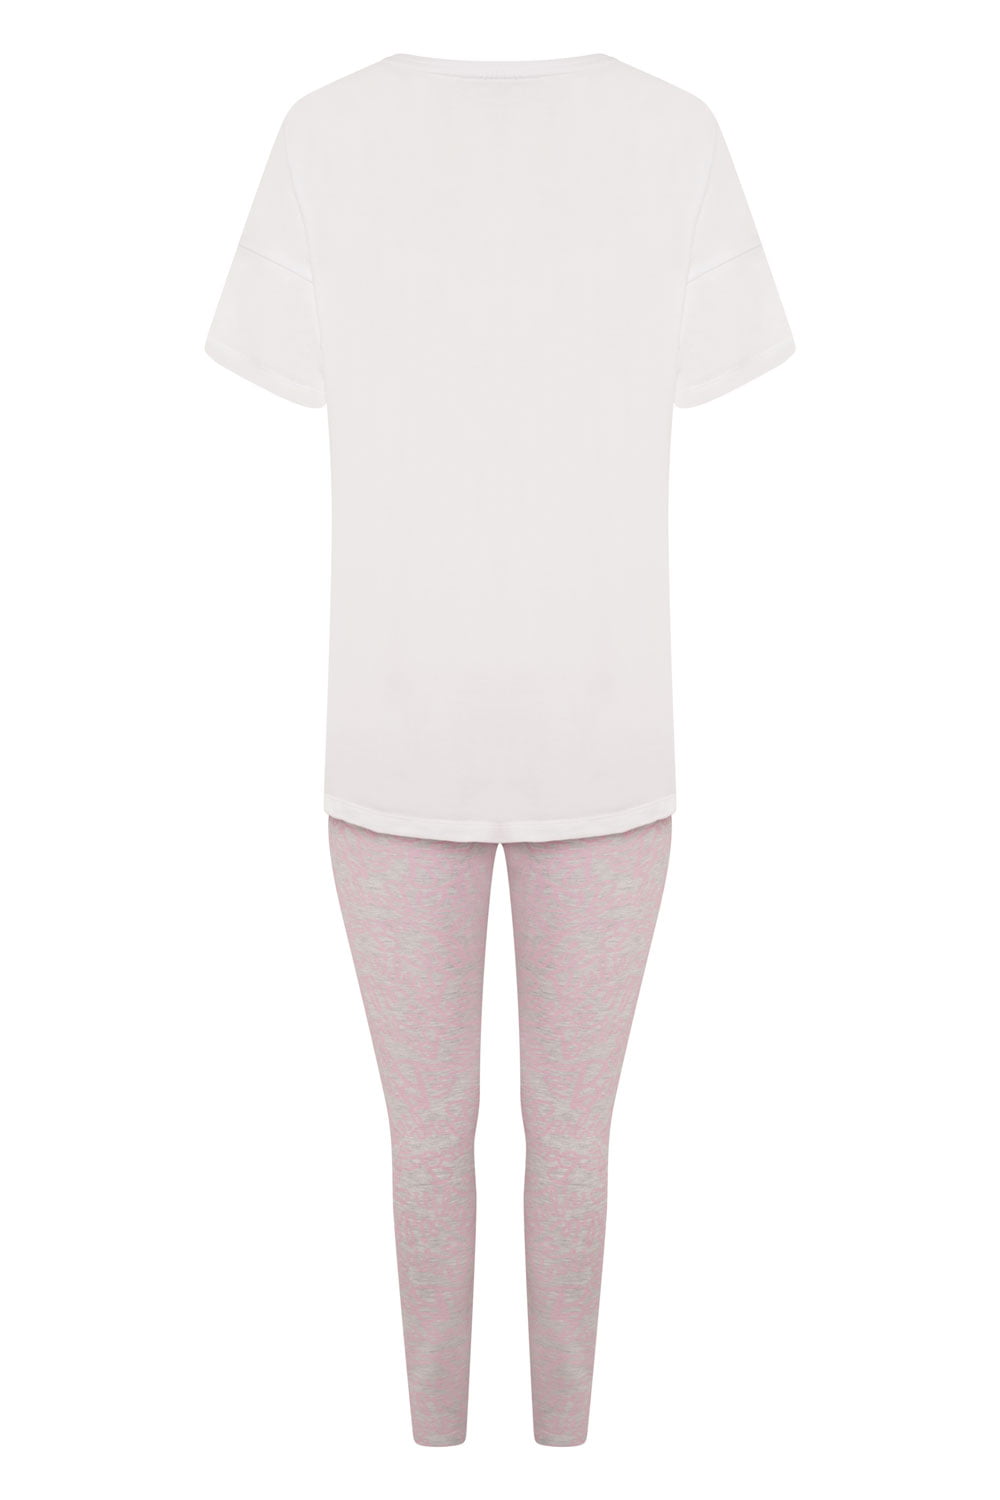 Barbie Ladies BCI Cotton Pyjamas - Brand Threads